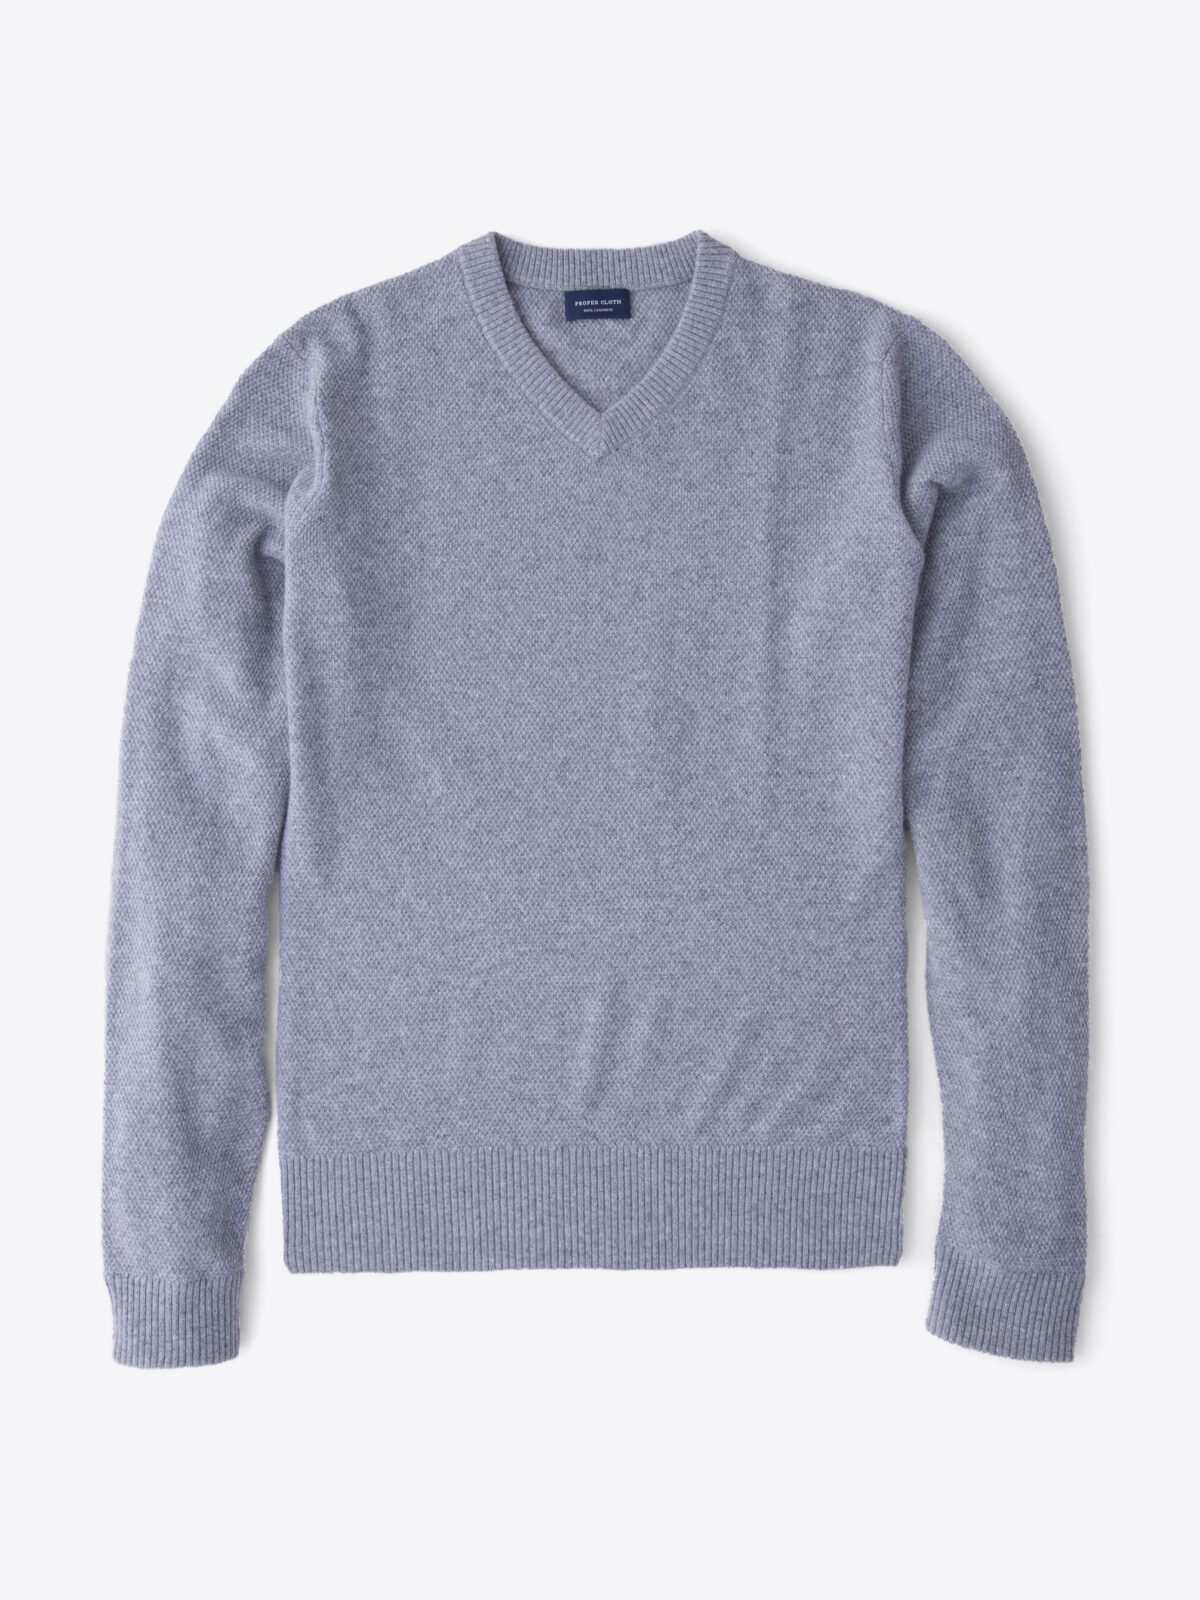 Light Grey Cobble Stitch Cashmere V-Neck Sweater